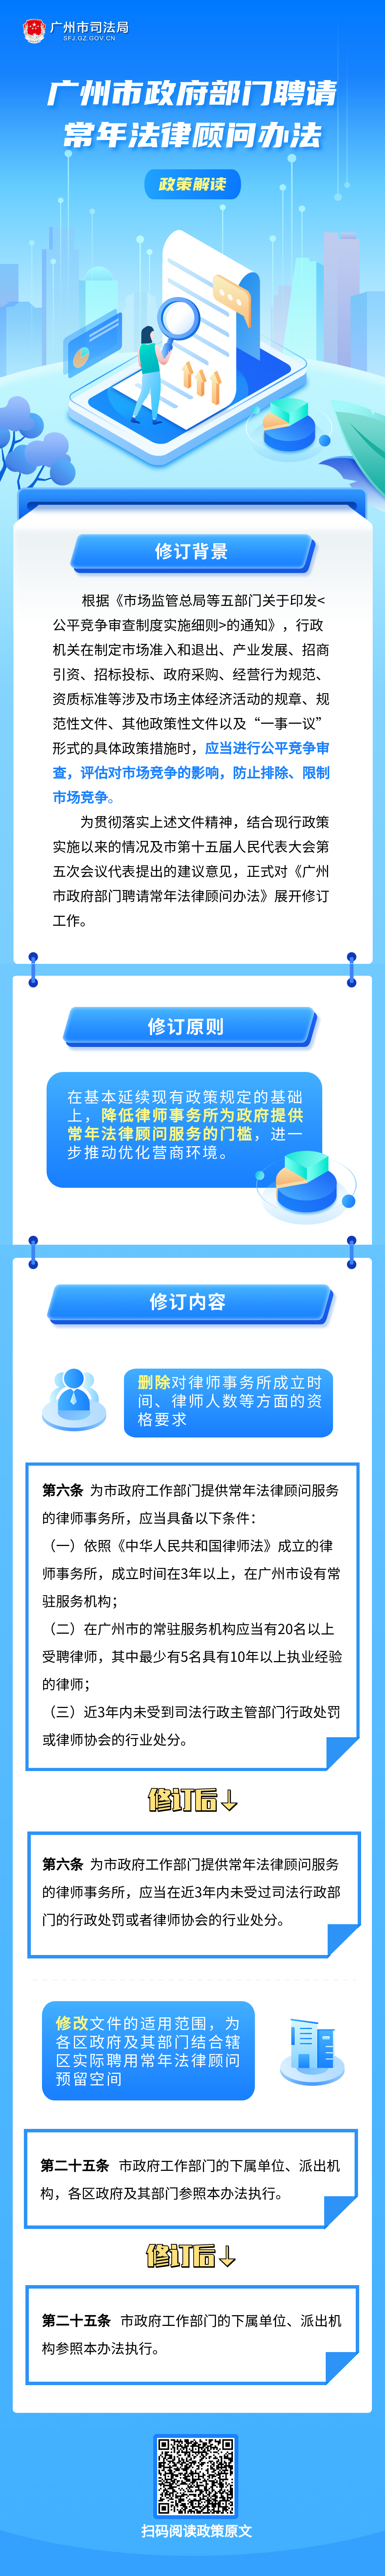 《广州市政府部门聘请常年法律顾问办法》政策解读.png